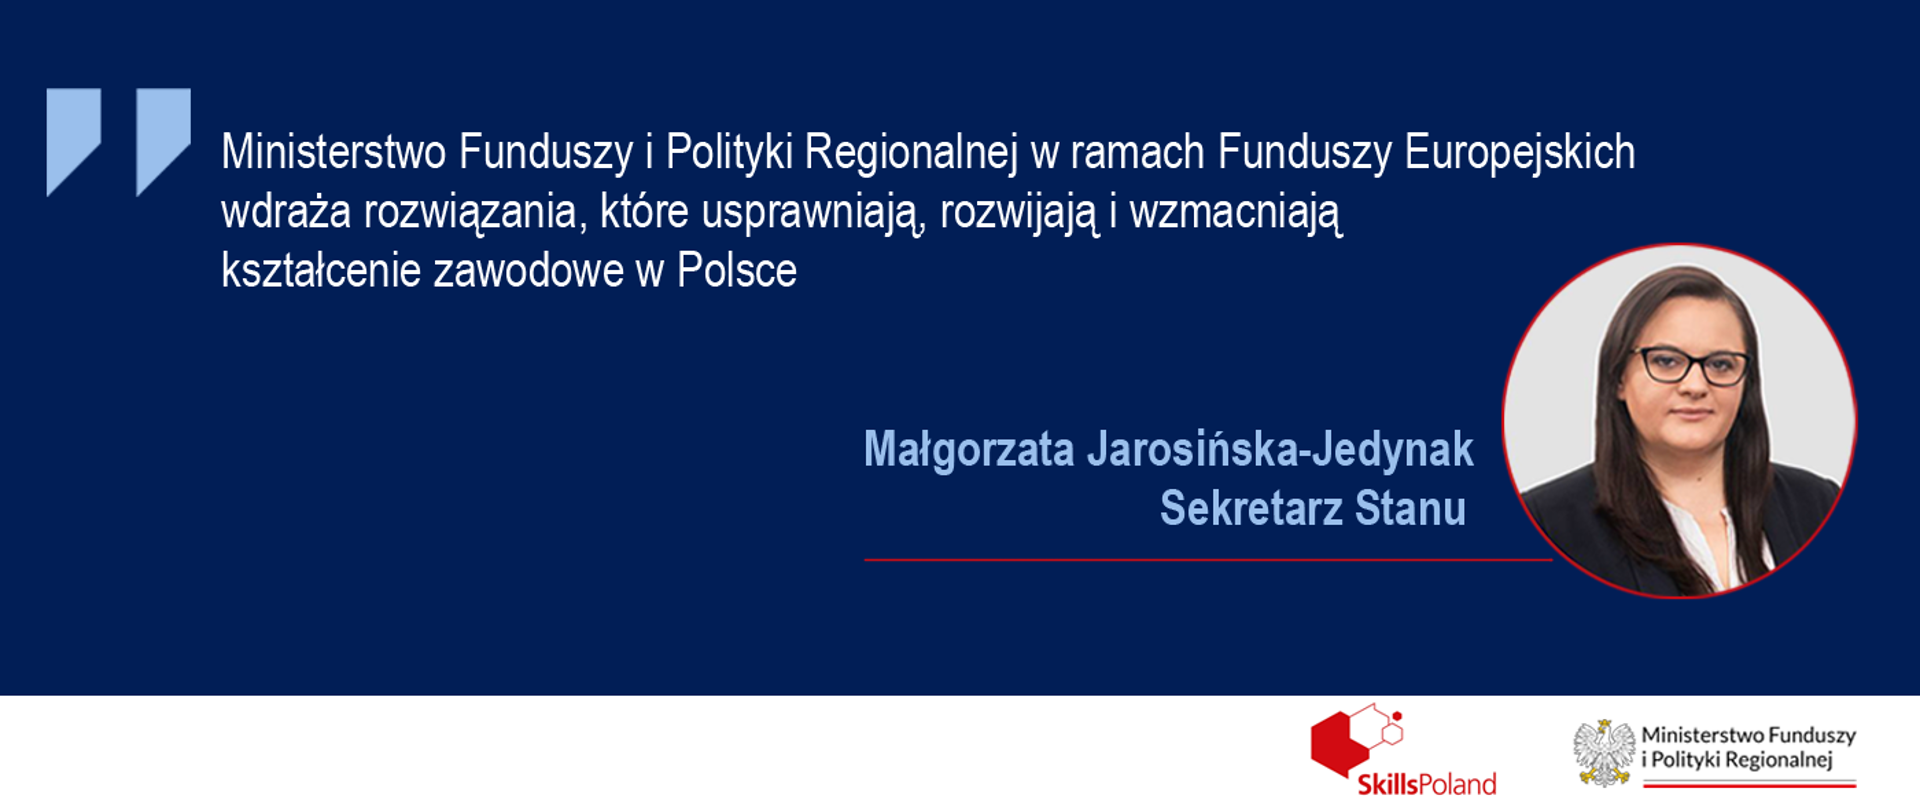 Na grafice napis: "Ministerstwo Funduszy i Polityki Regionalnej w ramach Funduszy Europejskich wdraża rozwiązania, które usprawniają, rozwijają i wzmacniają kształcenie zawodowe w Polsce". Obok zdjęcie portretowe wiceminister Małgorzaty Jarosińskiej-Jedynak.